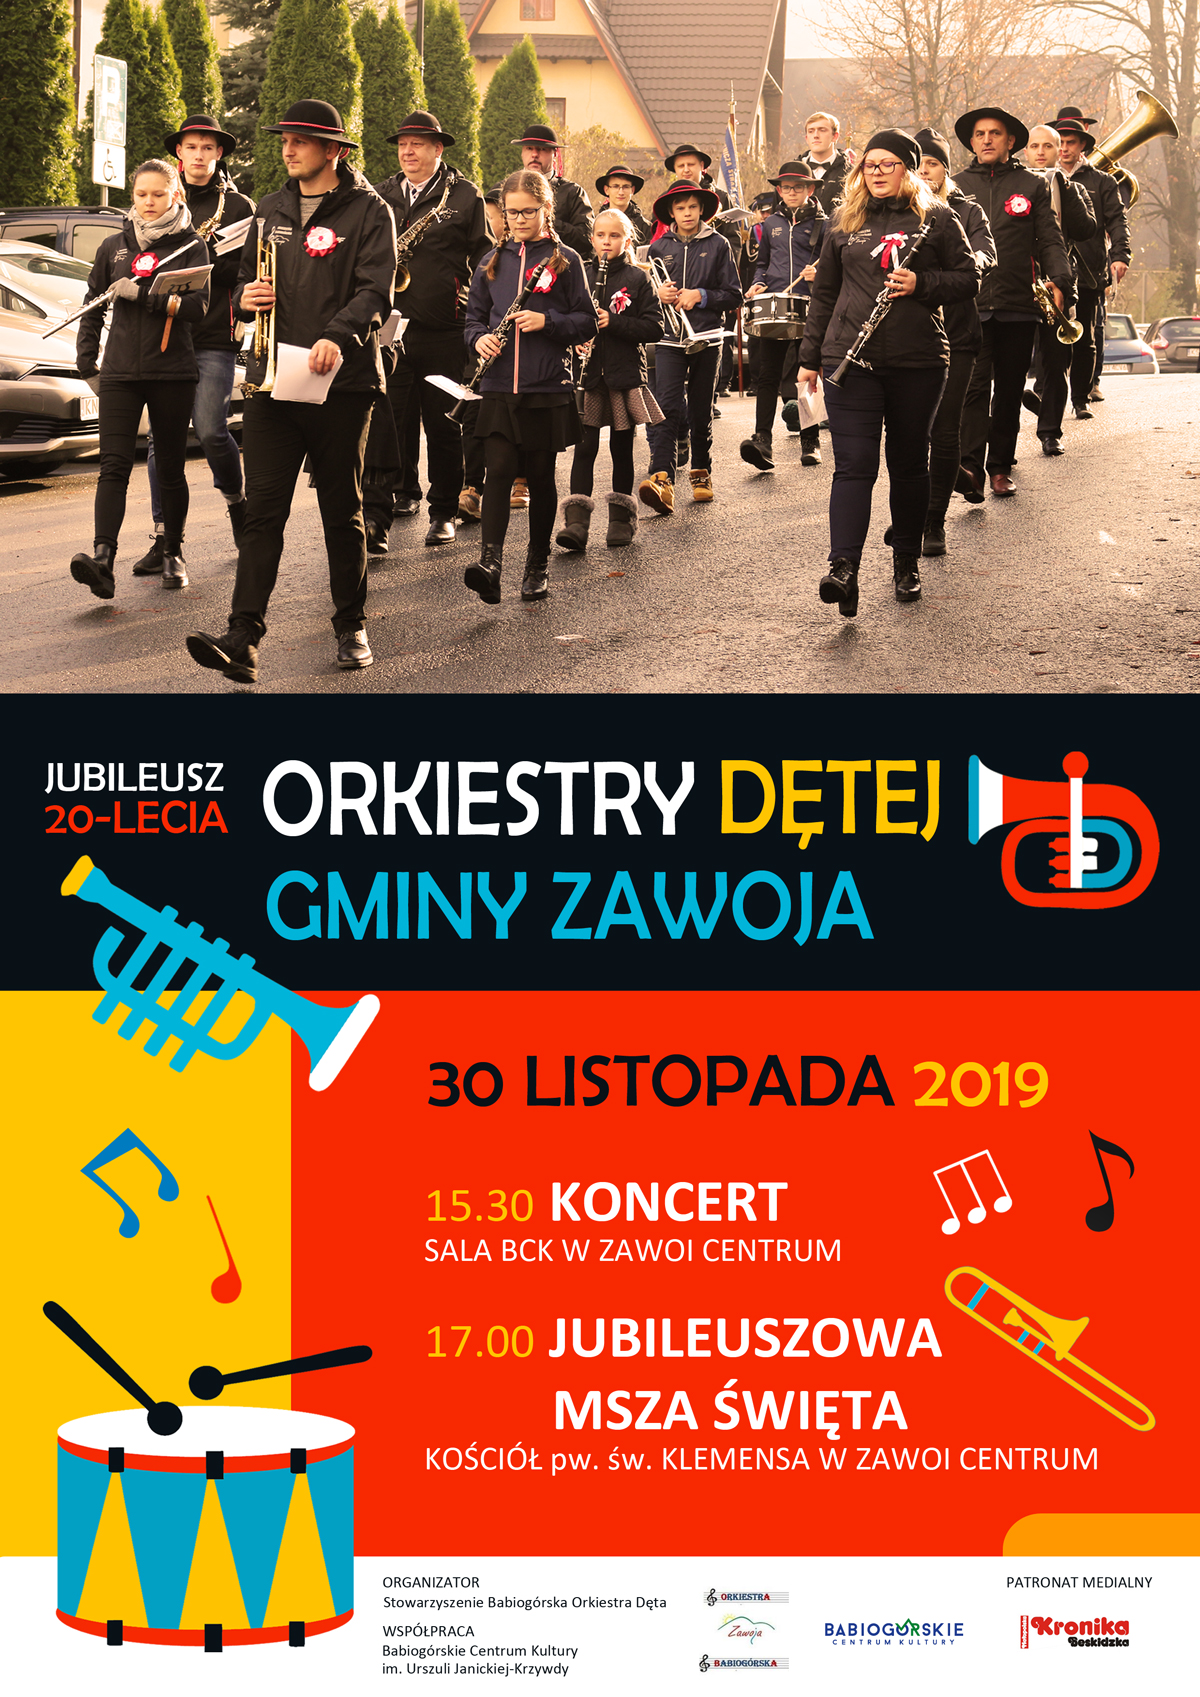 Jubileusz 20-lecia Orkiestry Dętej Gminy Zawoja